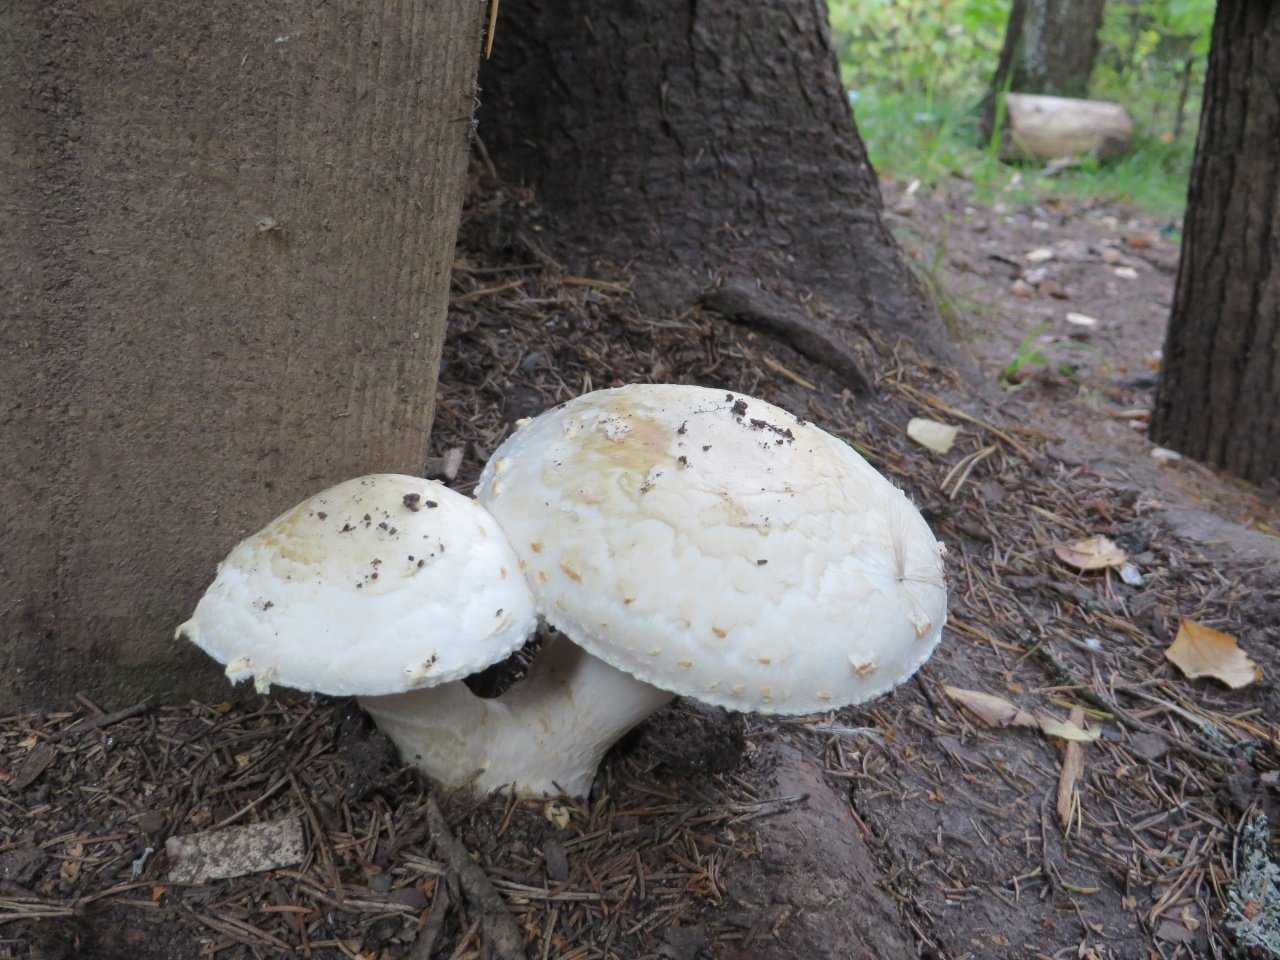 Какие существуют виды съедобных грибов шампиньонов: фото и описание, как выглядят лесные разновидности